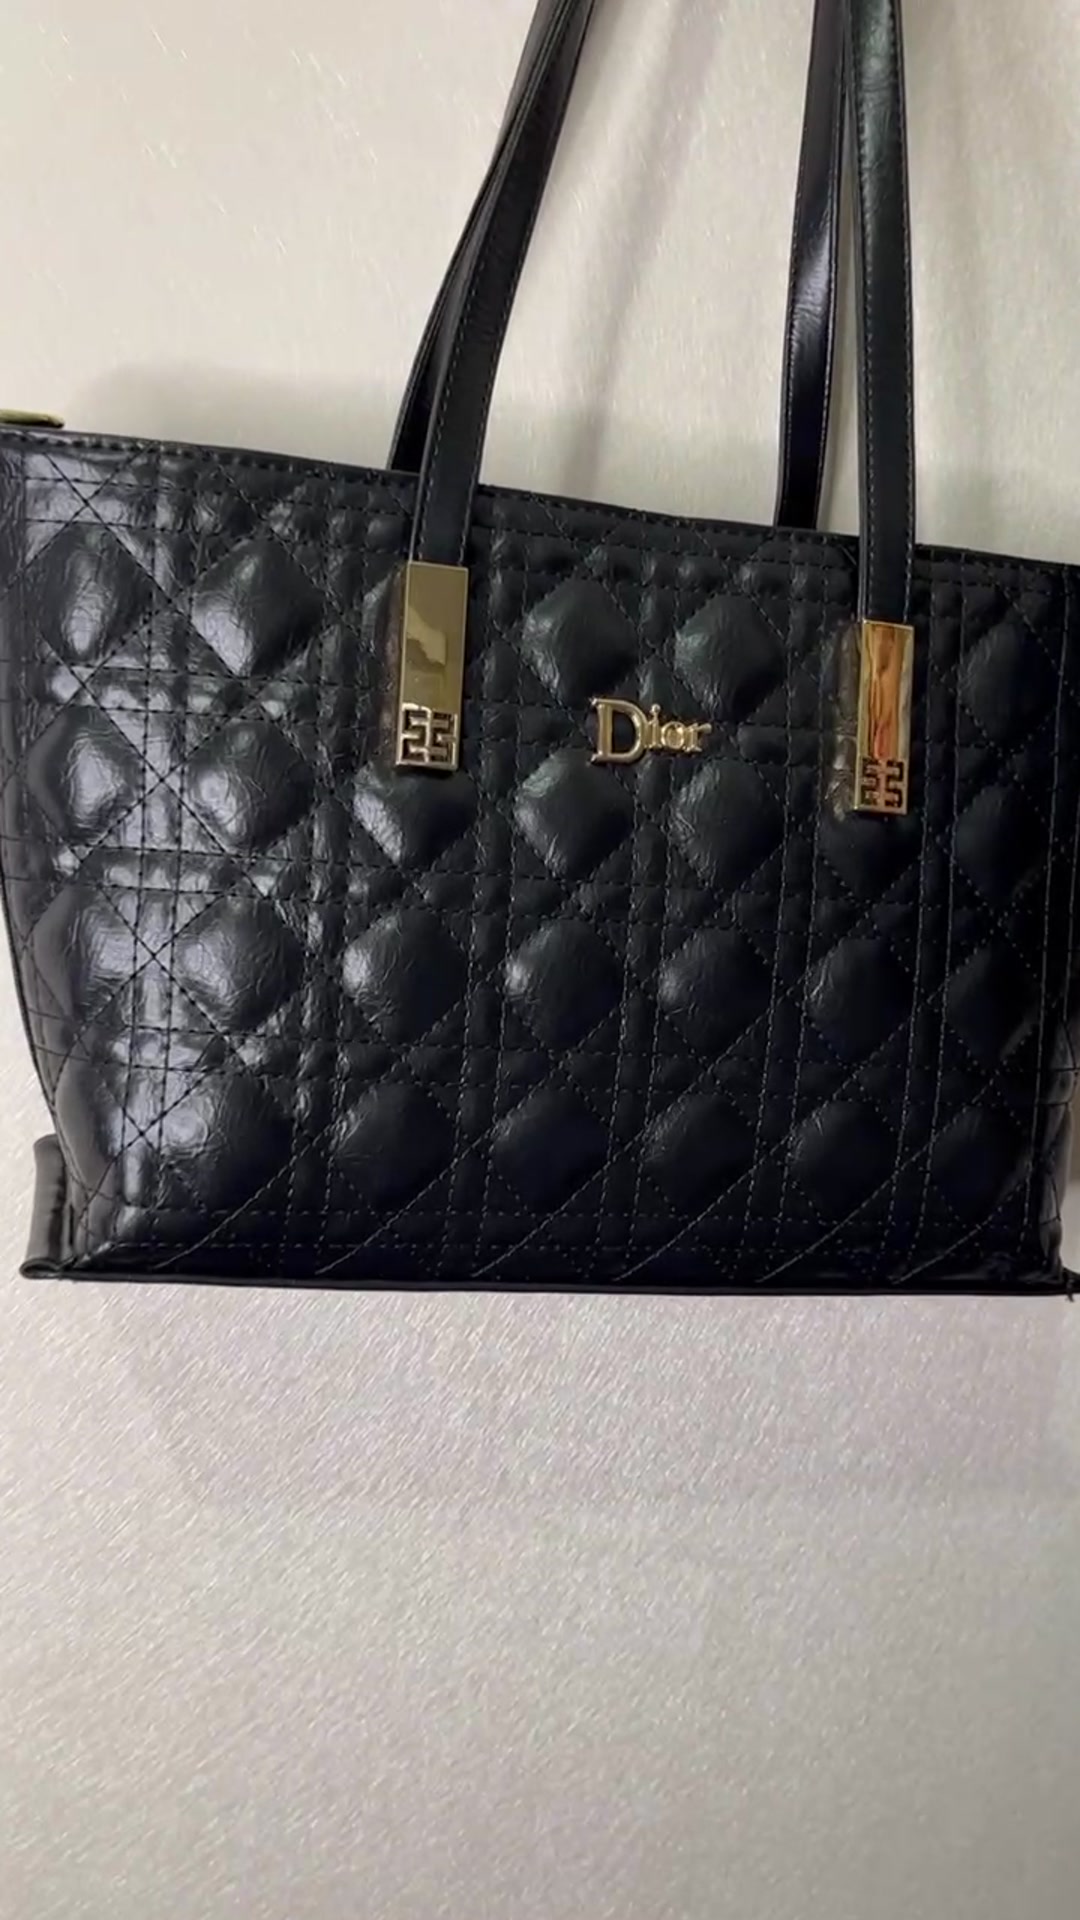 خرید و قیمت کیف زنانه دخترانه گلدوزی جدید دیور Dior (ارسال رایگان) از غرفهکیف بامیکا. Bamika Bag